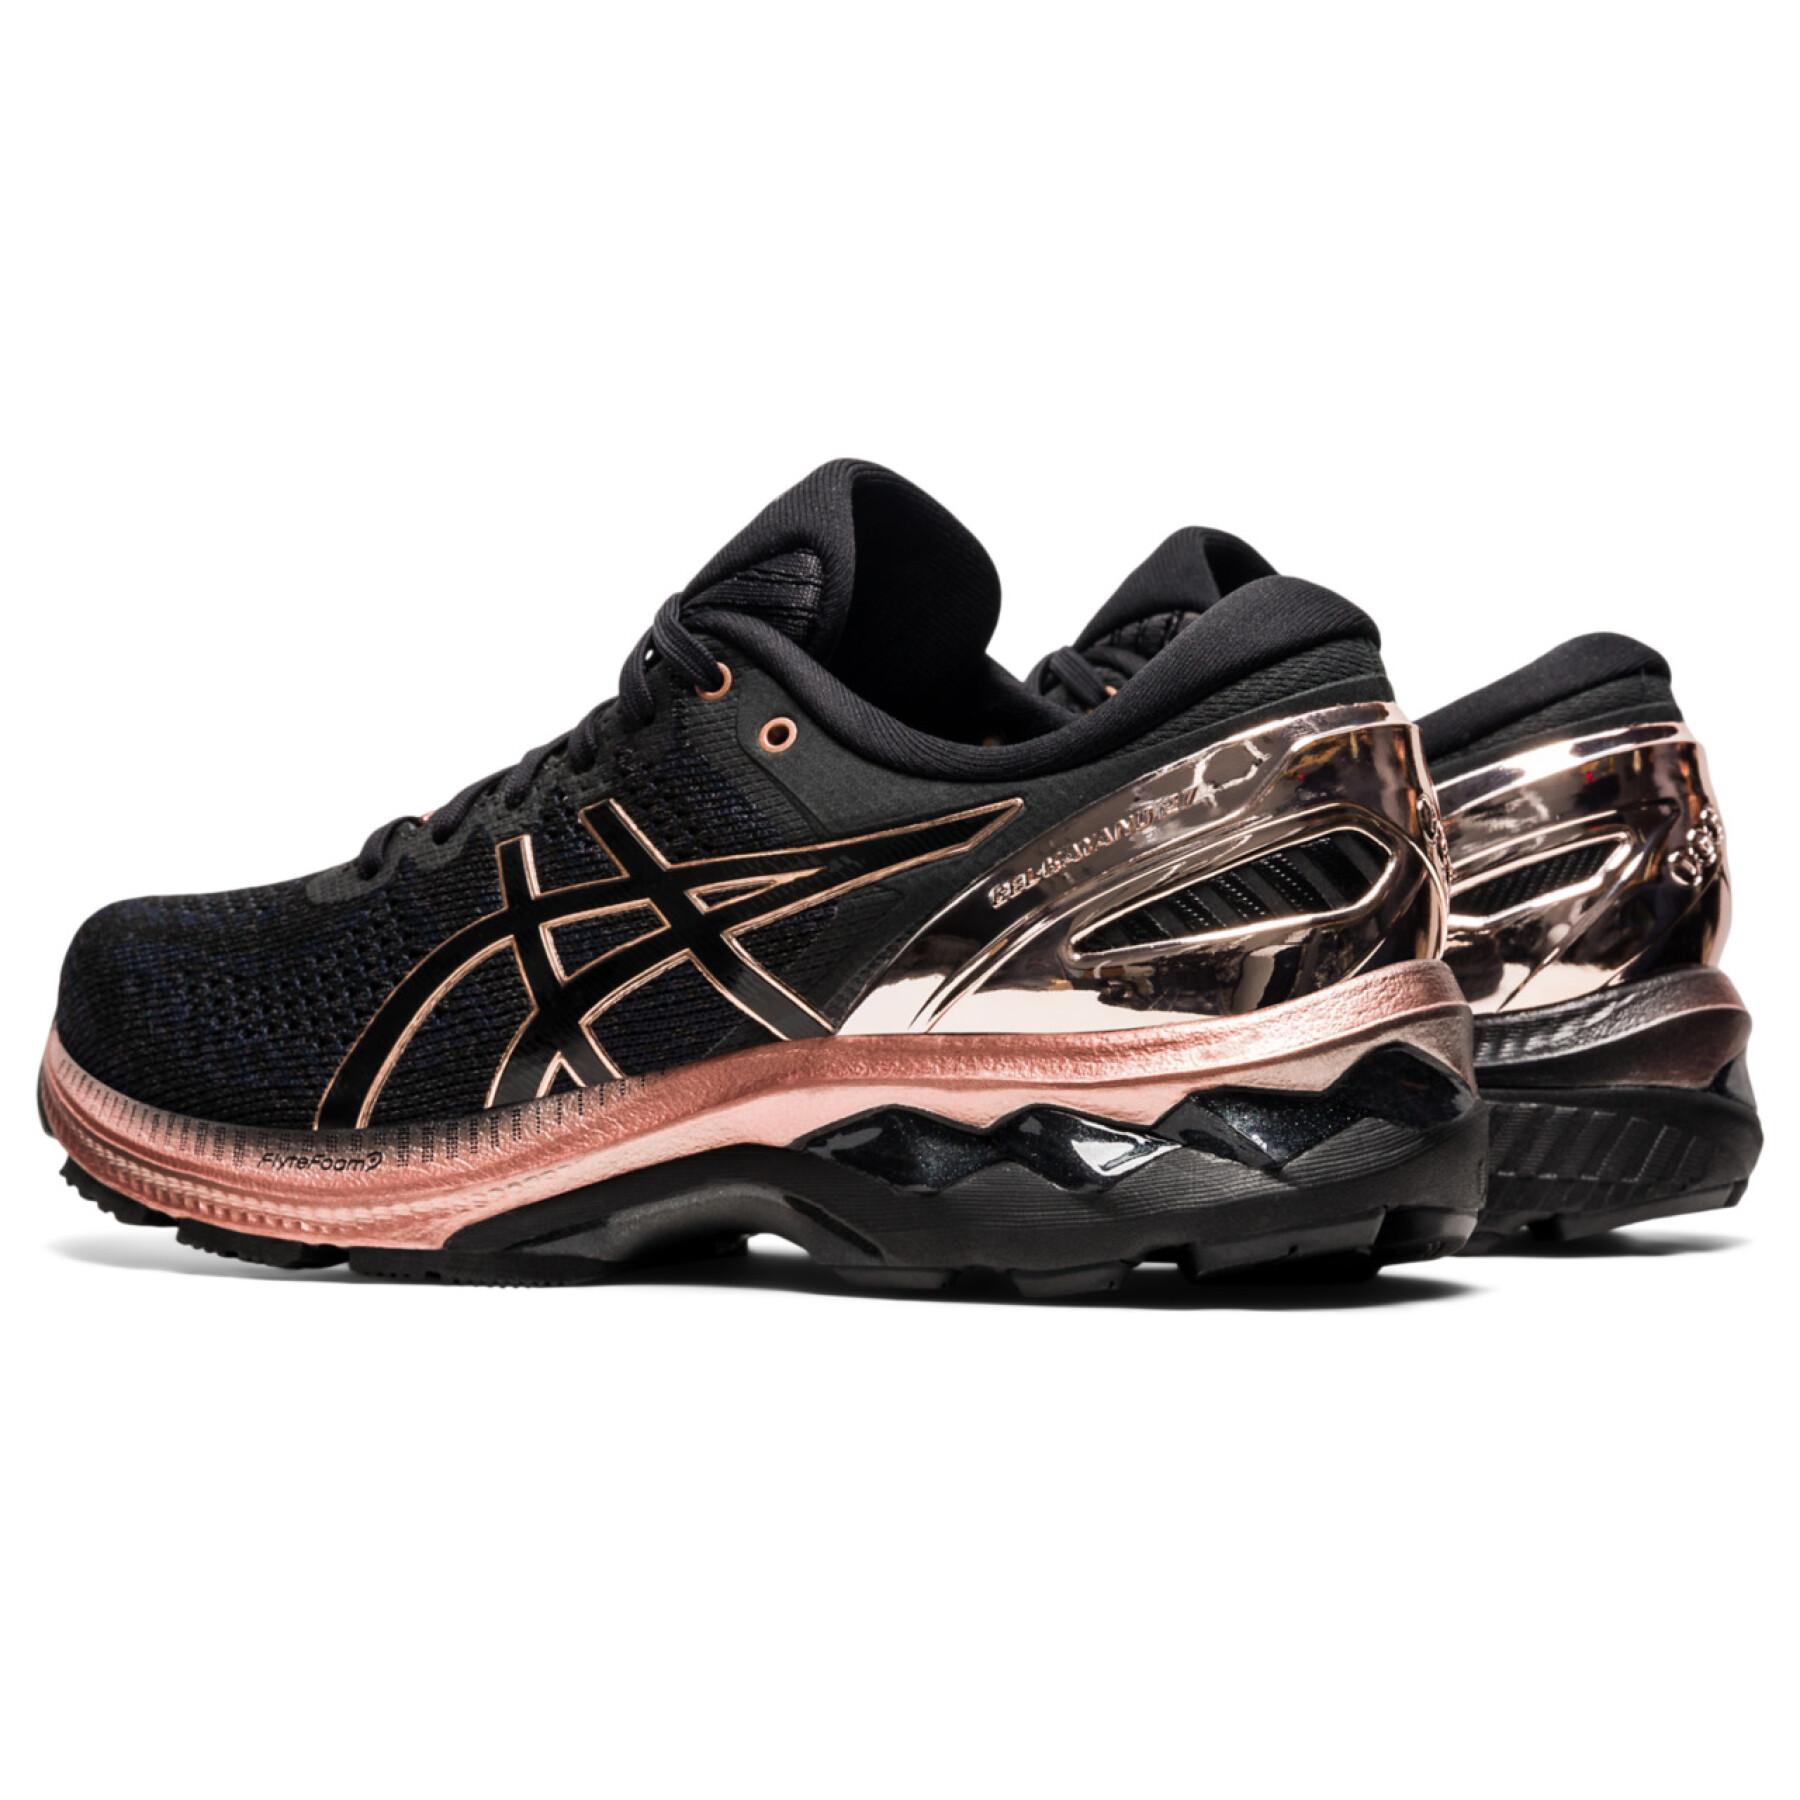 Chaussures de running femme Asics Gel-Kayano 27 Platinum